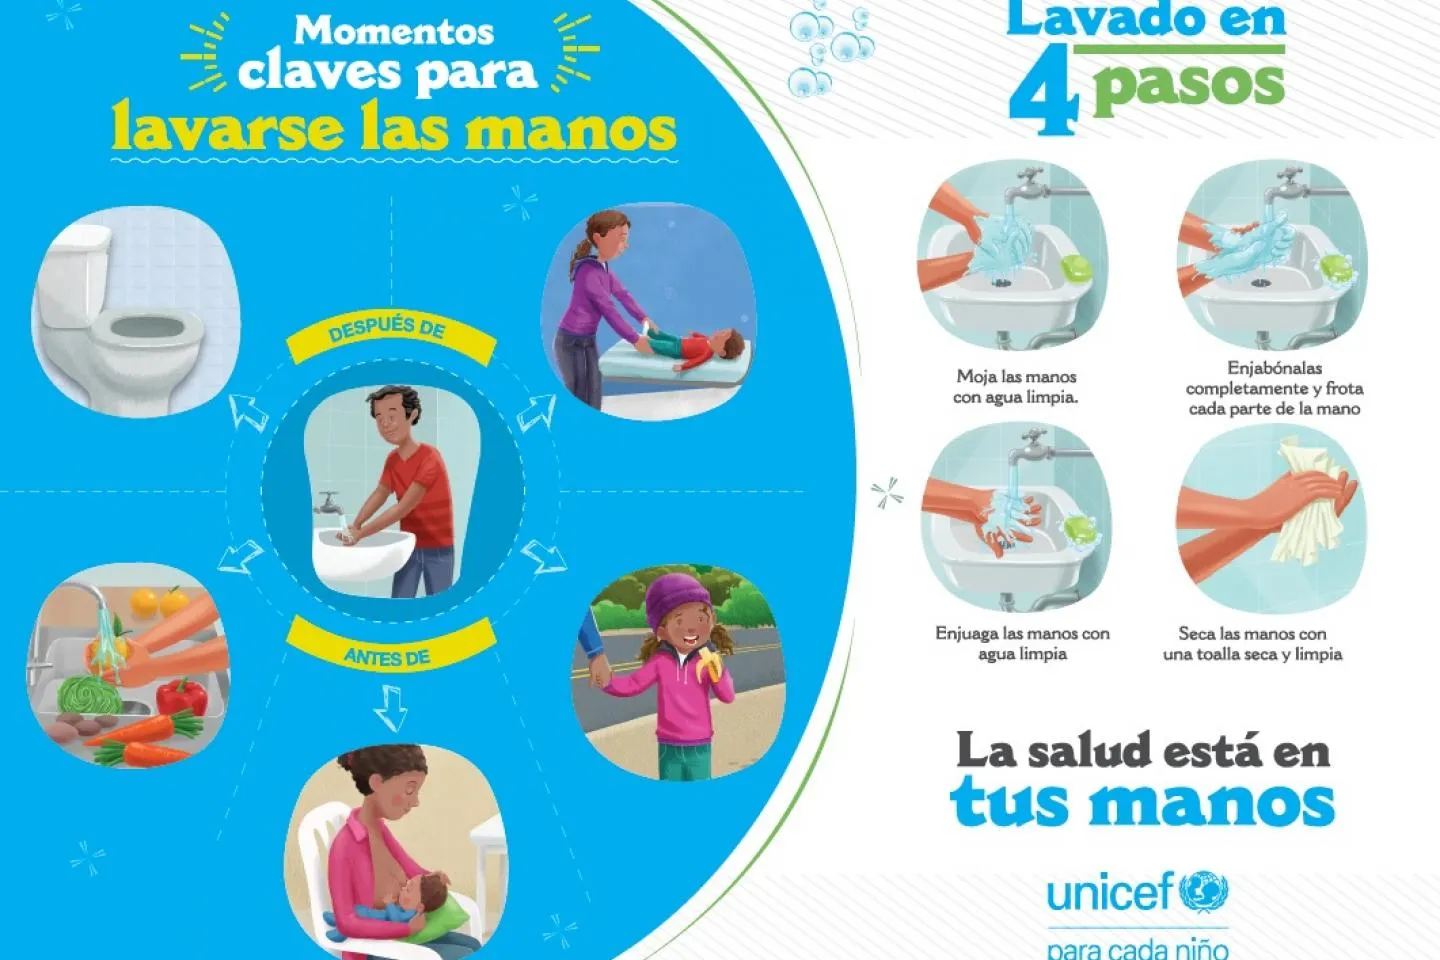 Momentos claves para lavarse de manos | UNICEF Venezuela